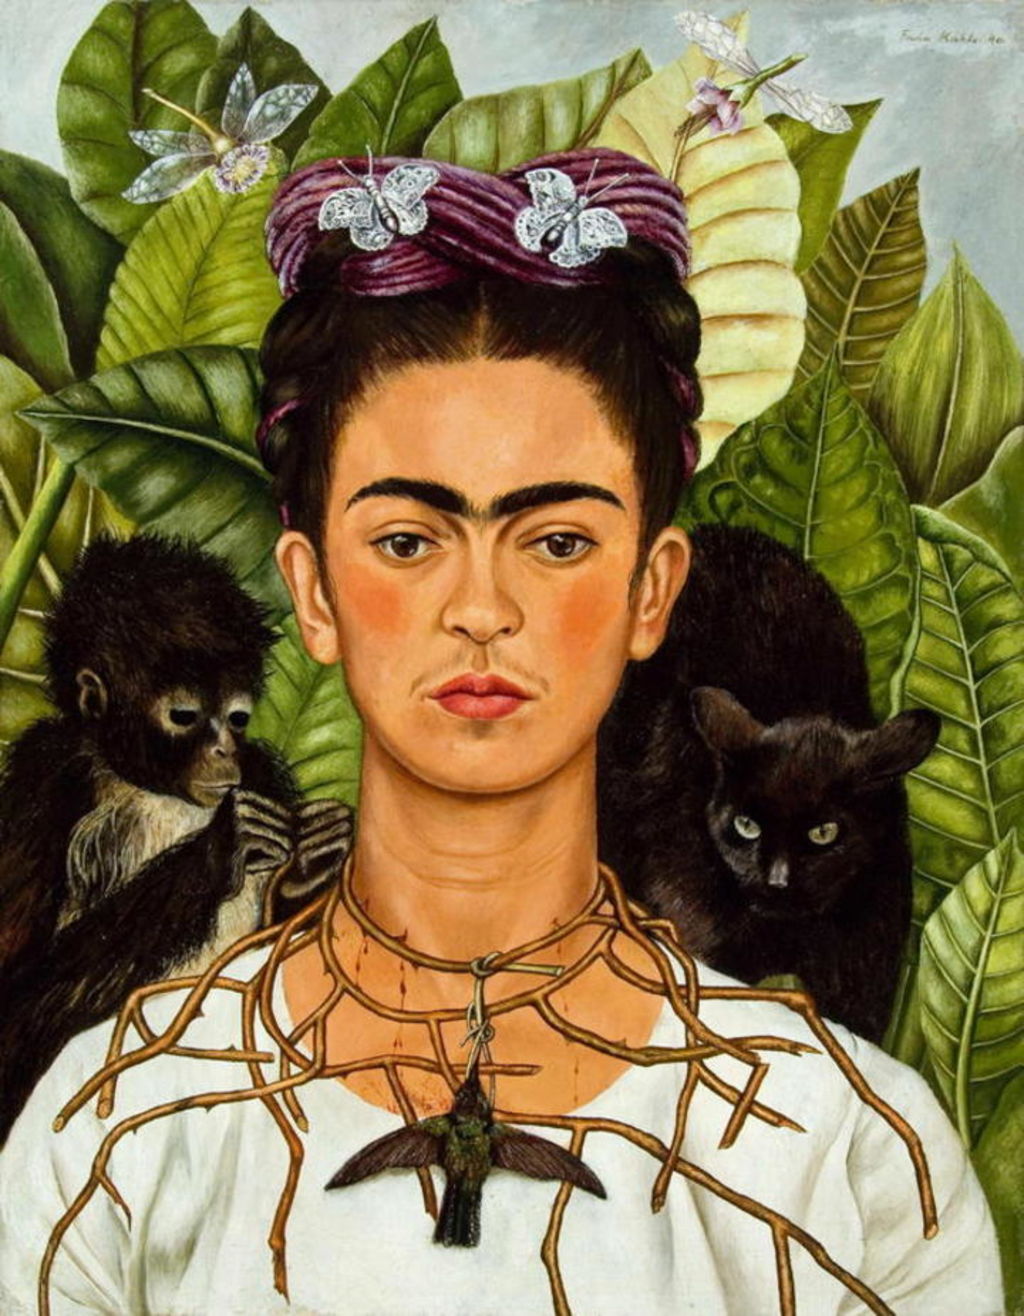 Al cumplirse 108 años del natalicio de la pintora mexicana Frida Kahlo (6 de julio de 1907), su legado continúa como inspiración del trabajo de artistas plásticos y creadores en general de todo el mundo. (ARCHIVO)